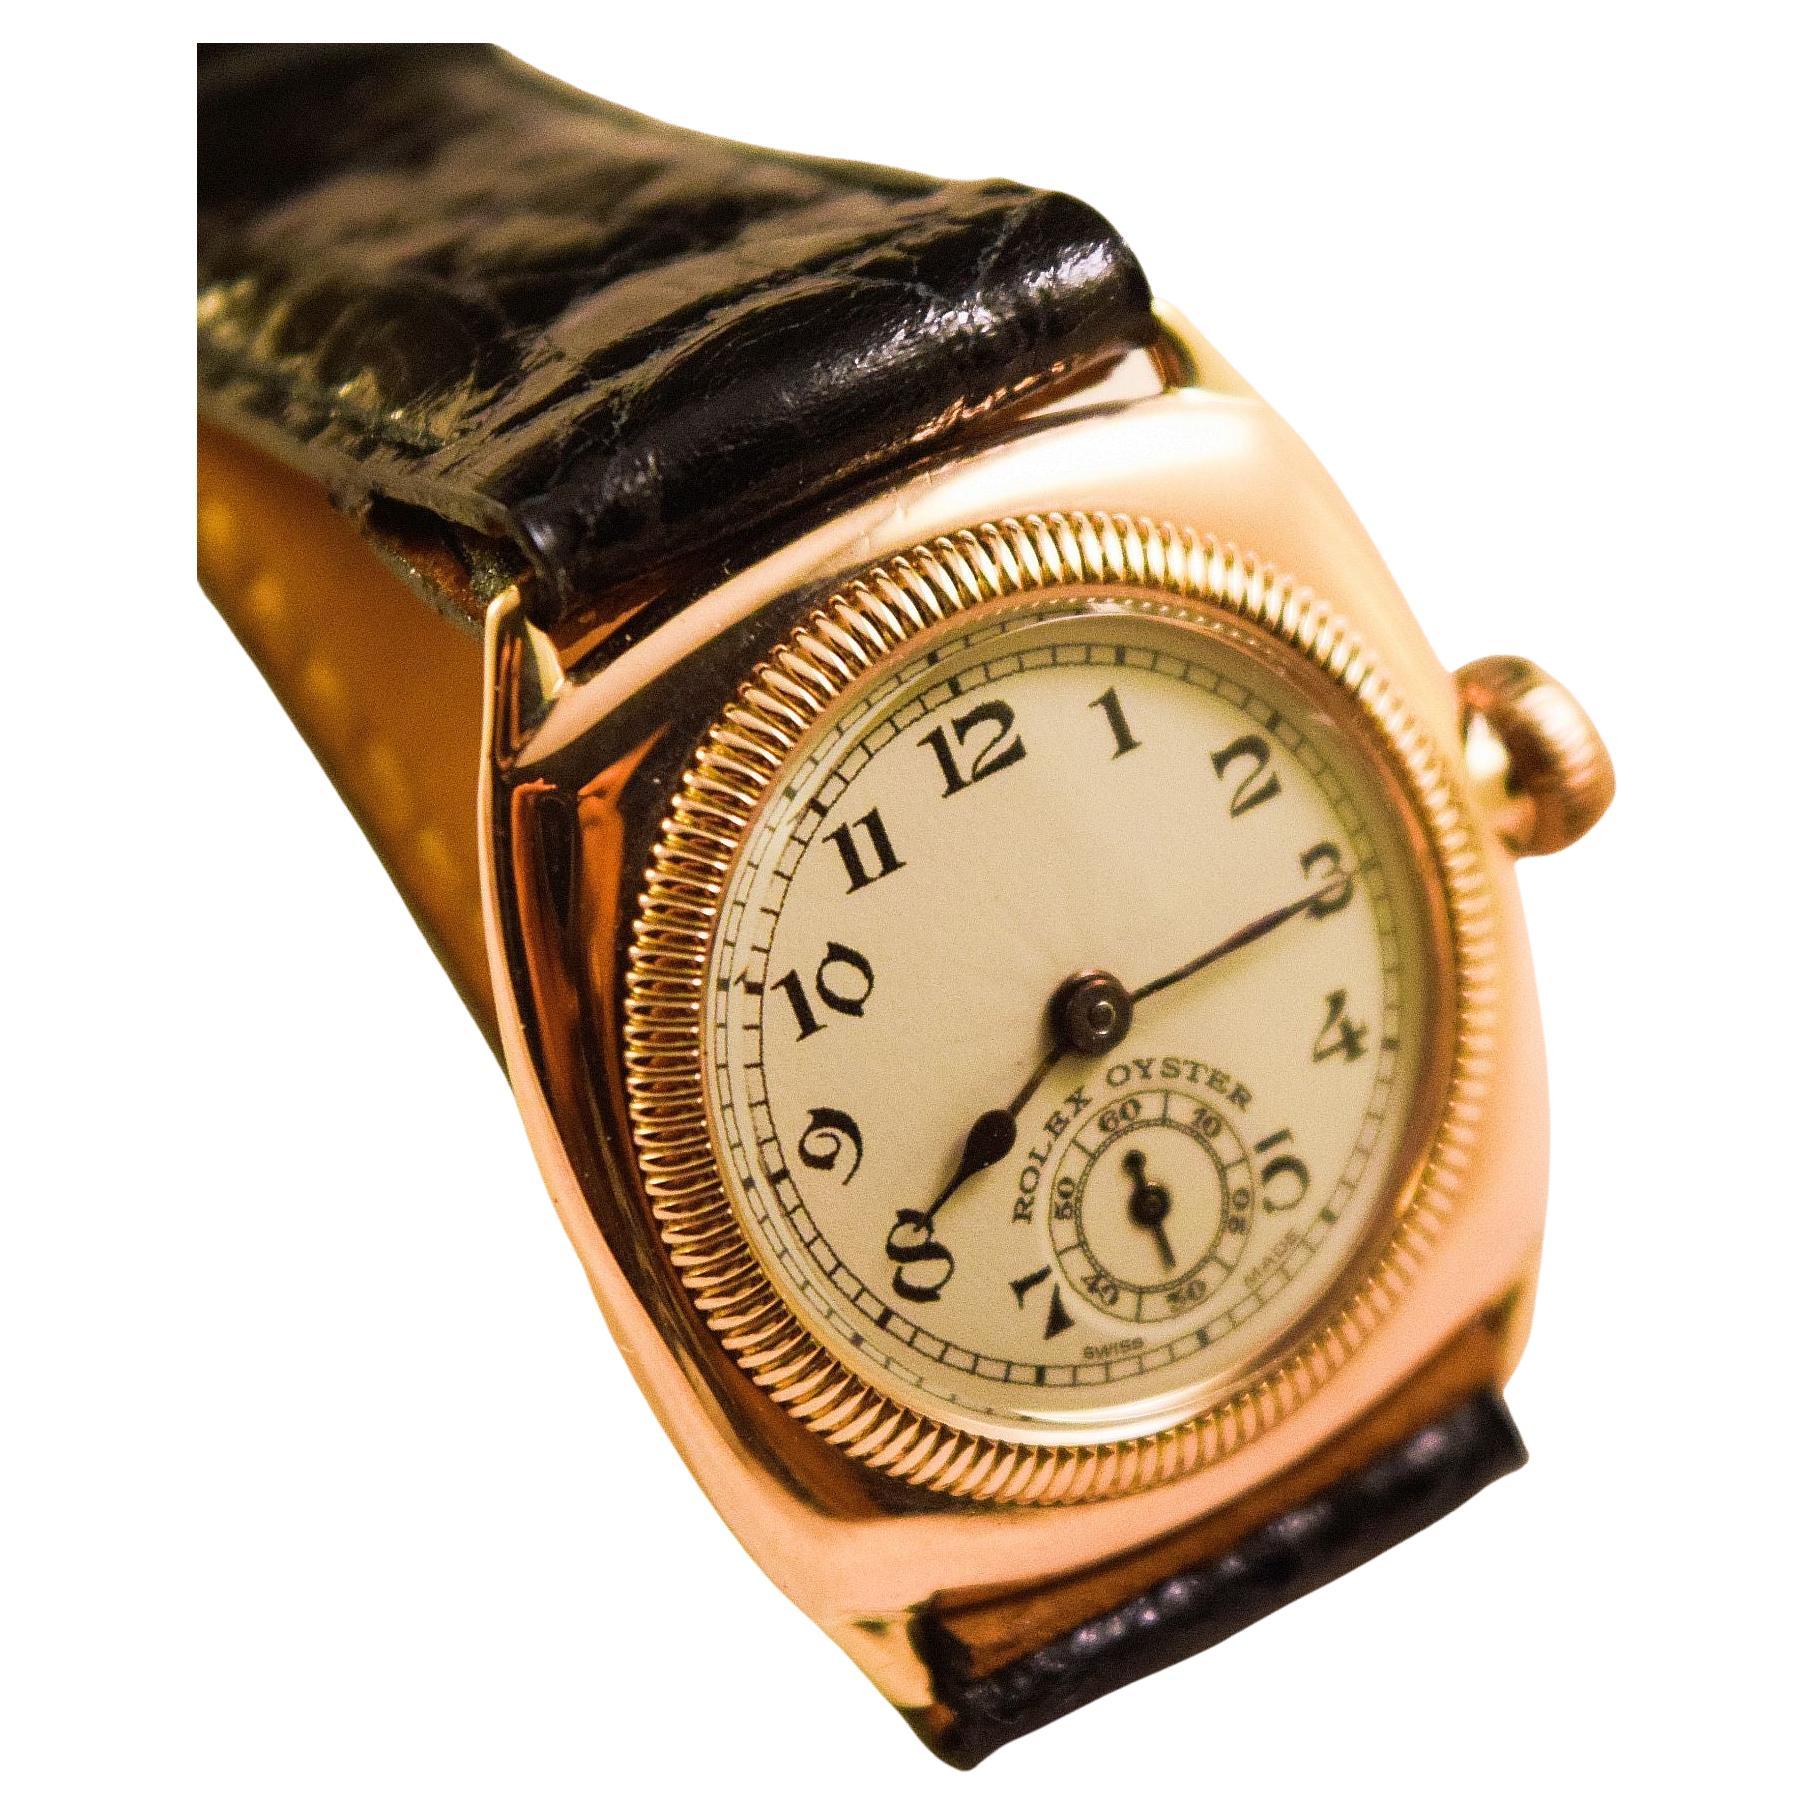 Rolex Oyster en or rose foncé massif, boîtier de forme coussin à l'aube
Cette montre date de la fin des années 20 et du début des années 30.
Le premier boîtier Oyster produit par Rolex et il est
la première montre étanche au monde.
Étonnant boîtier